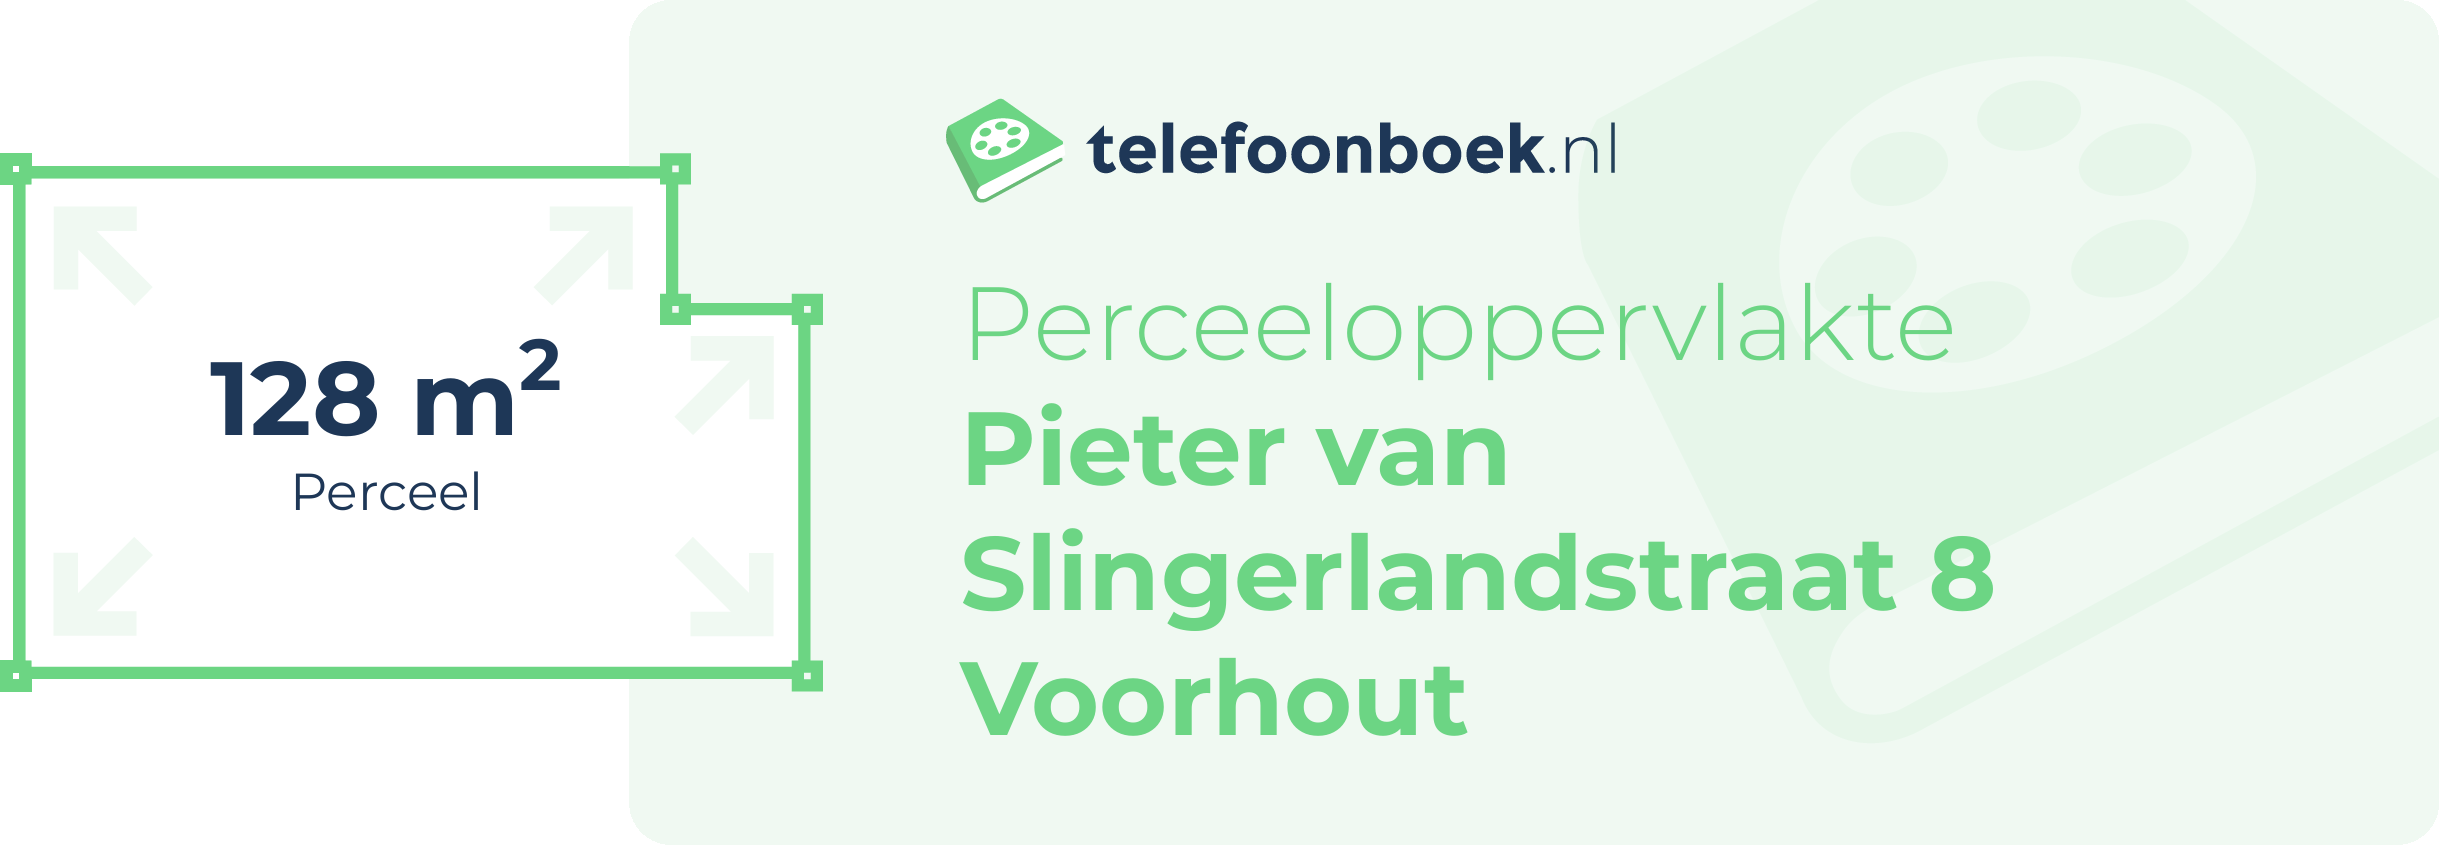 Perceeloppervlakte Pieter Van Slingerlandstraat 8 Voorhout